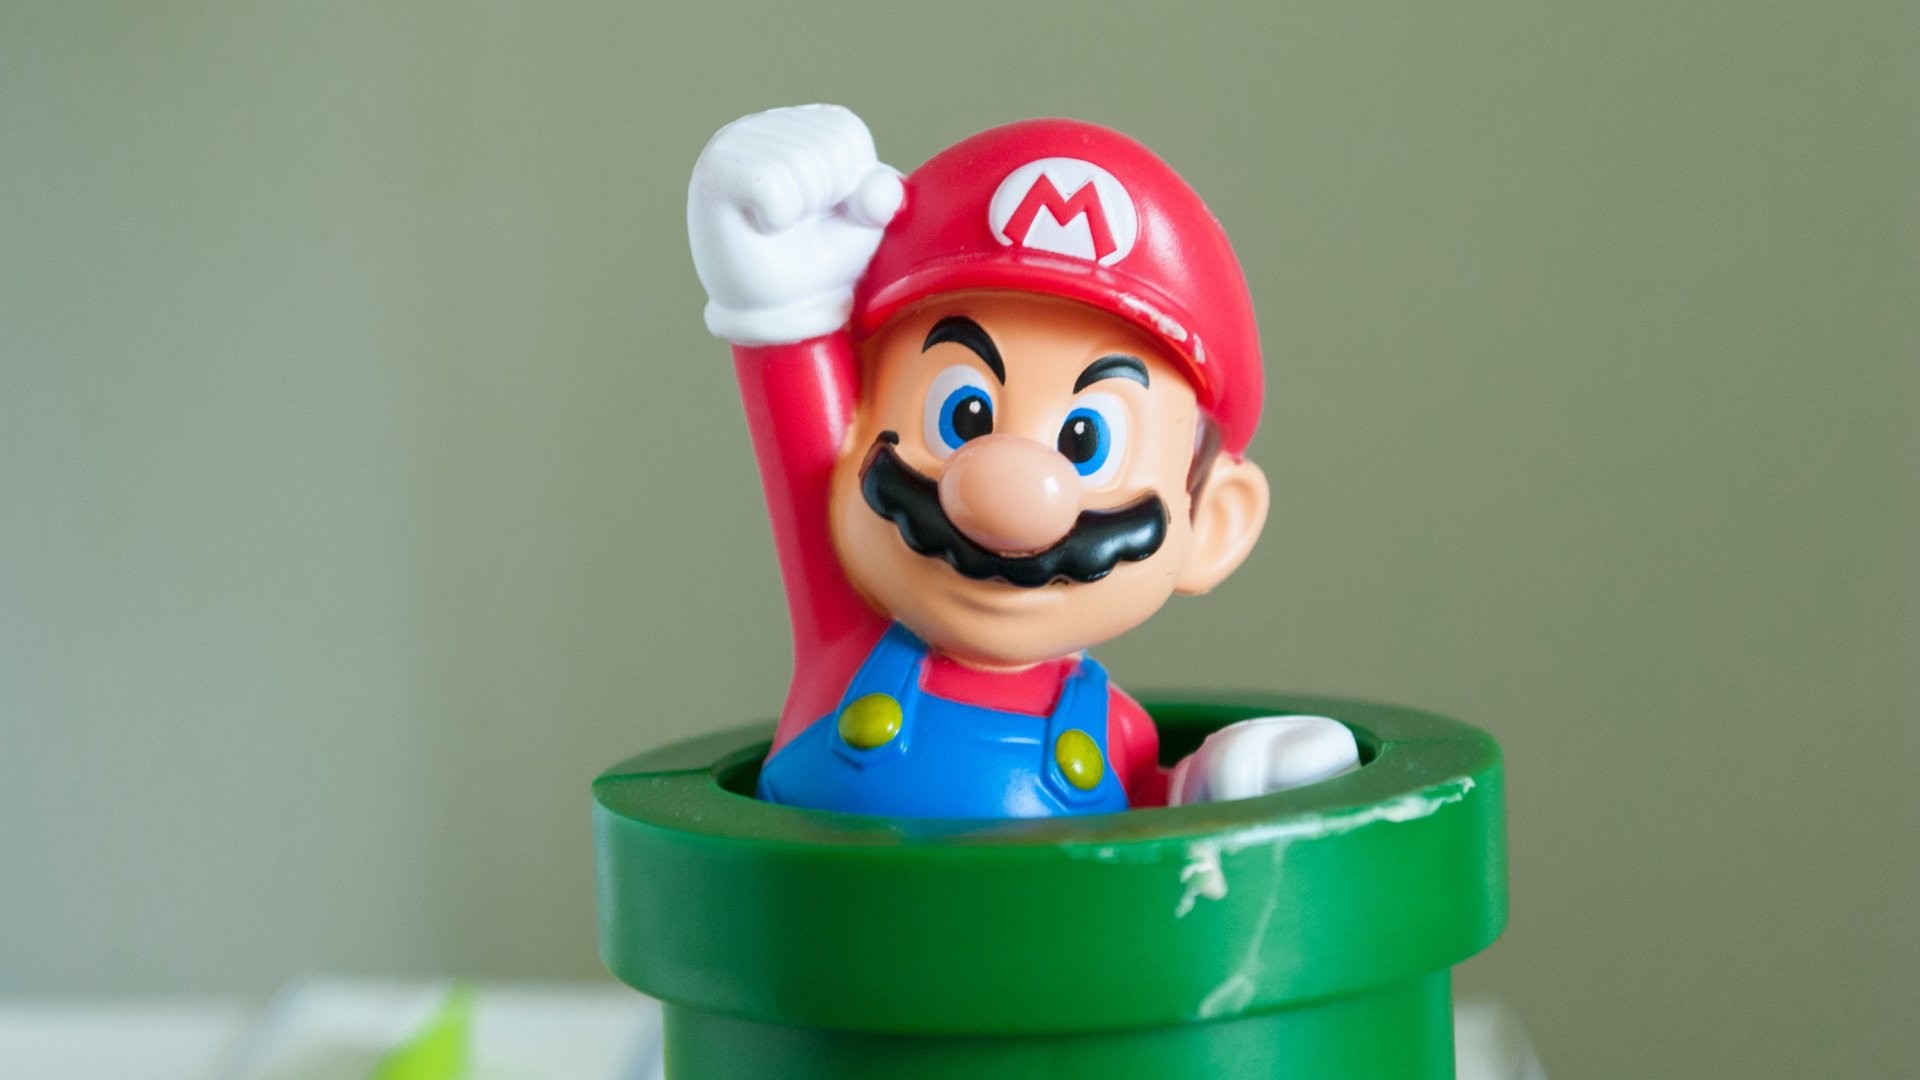 Foto de um boneco do personagem Mario do jogo Super Mario